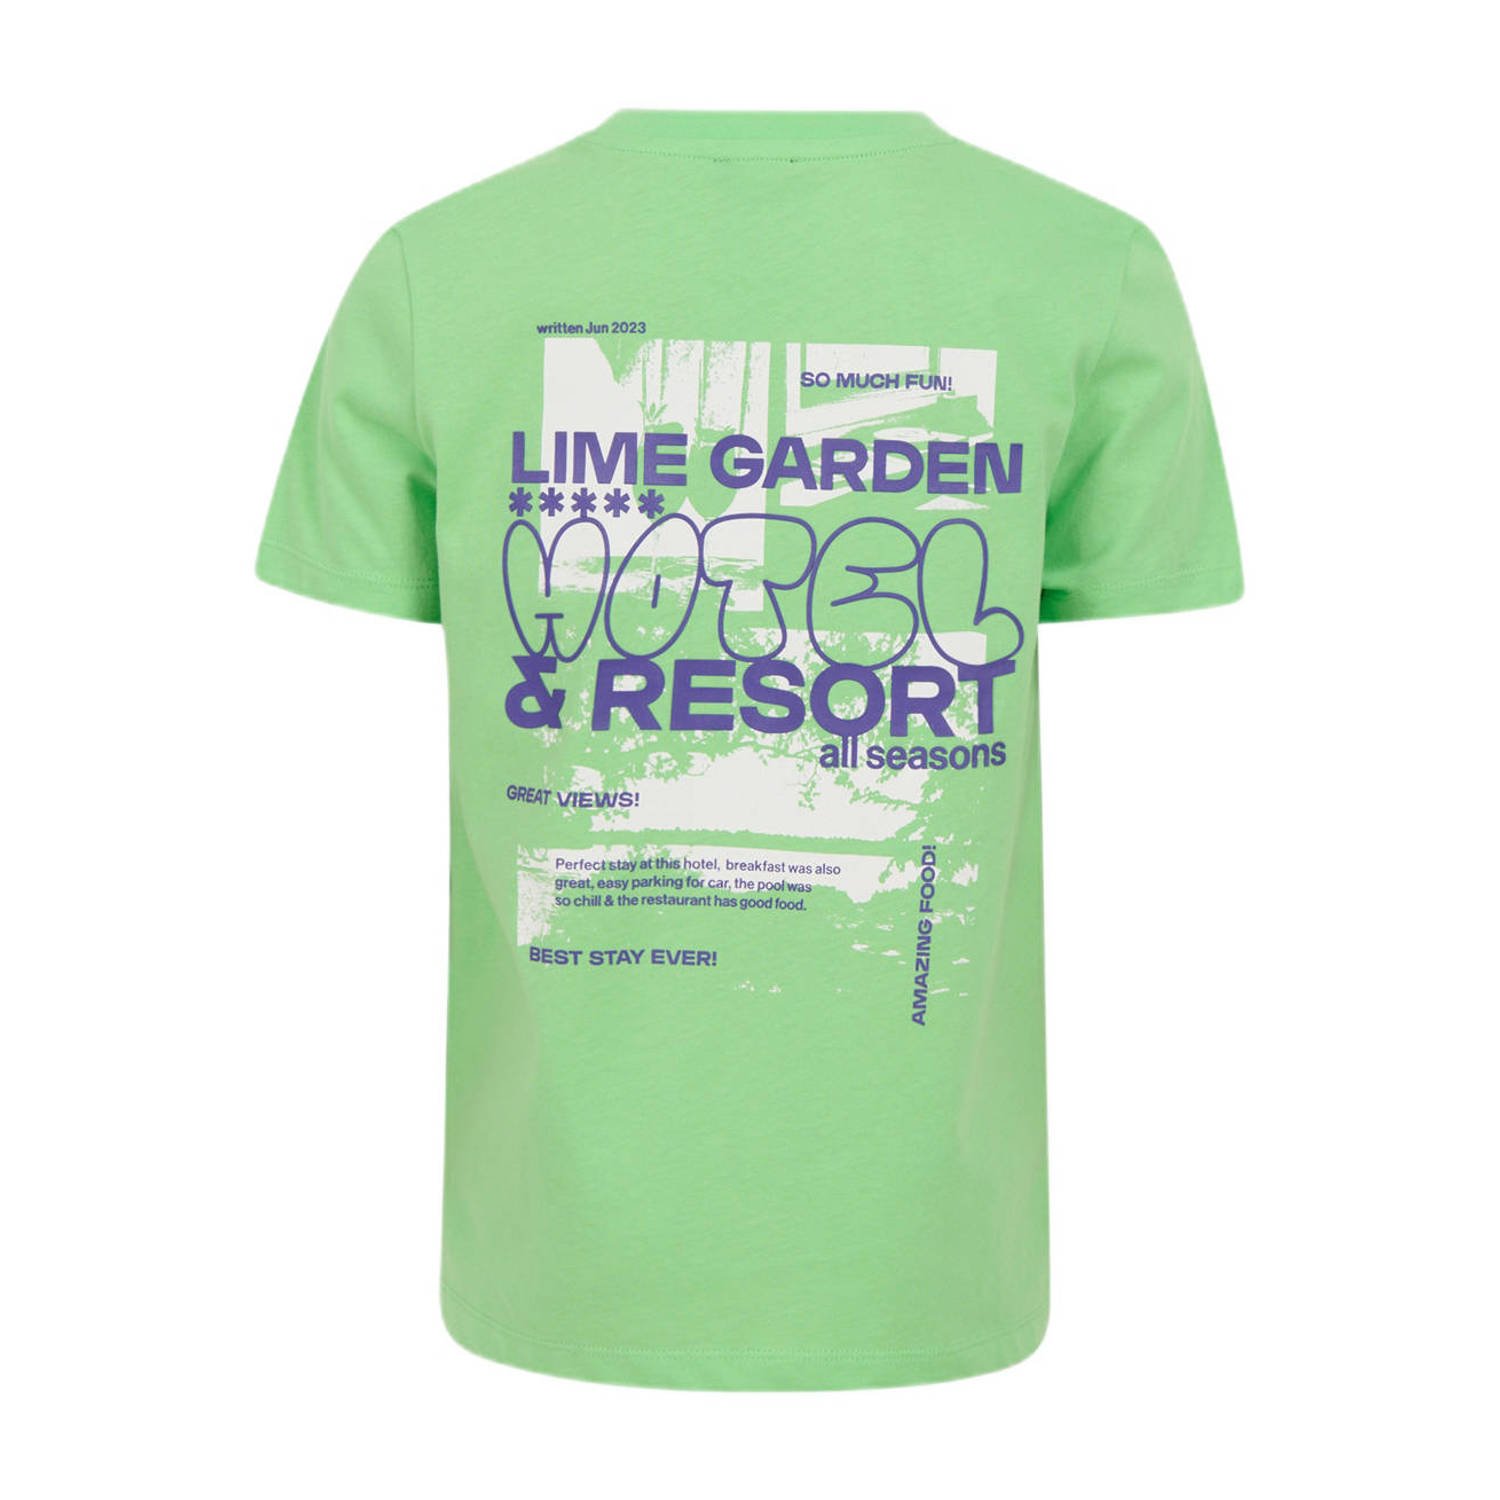 Shoeby T-shirt met backprint groen